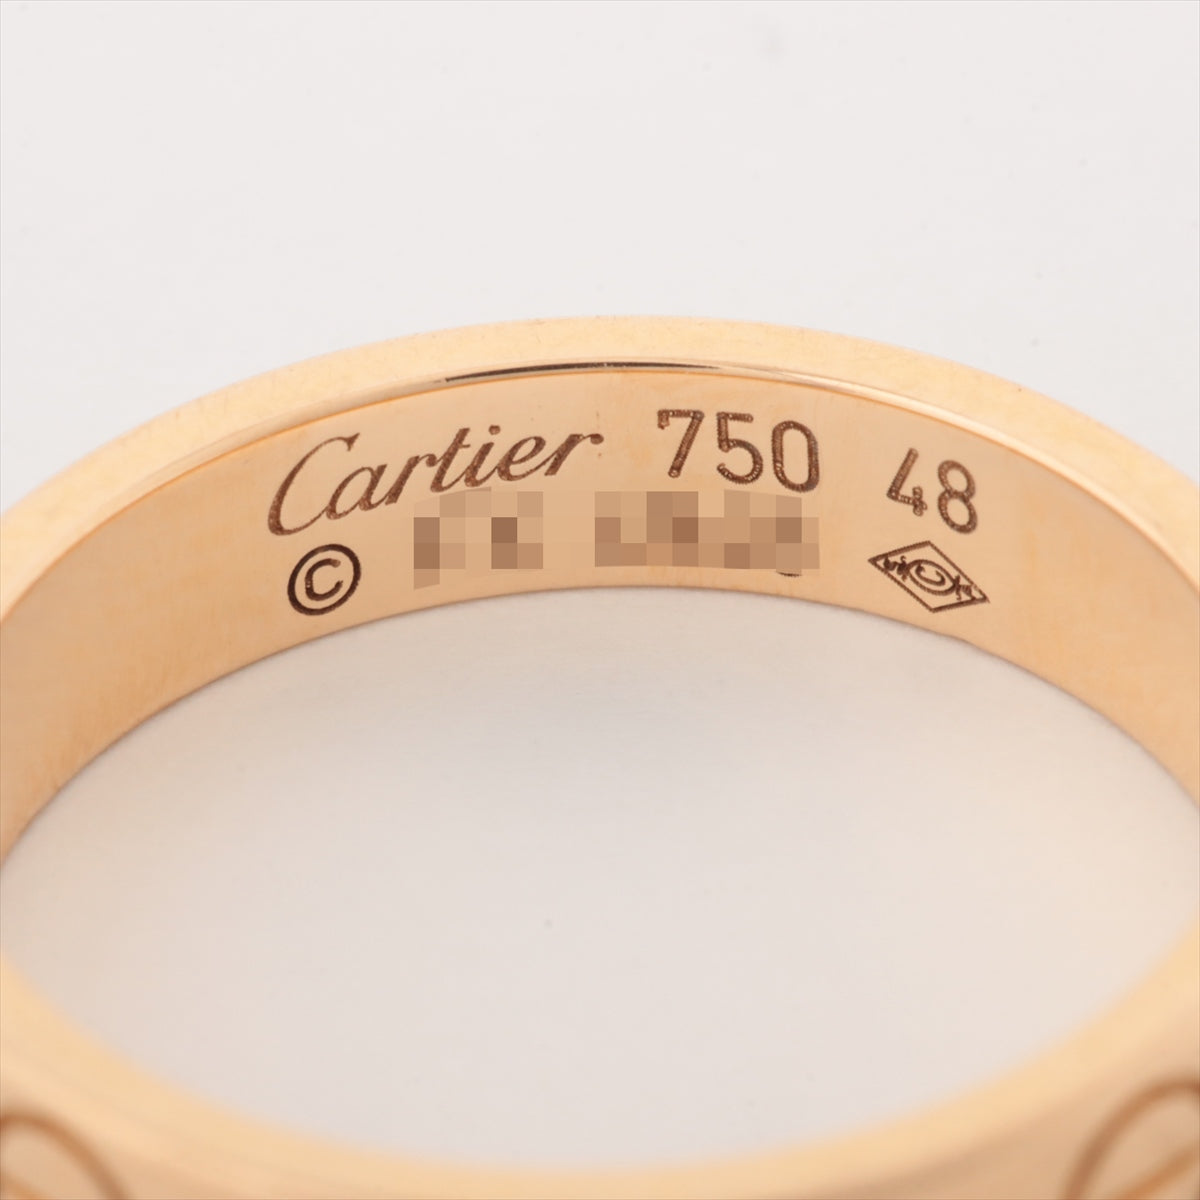 Cartier Mini-Love Ring 750 (PG) 3.2g 48 N